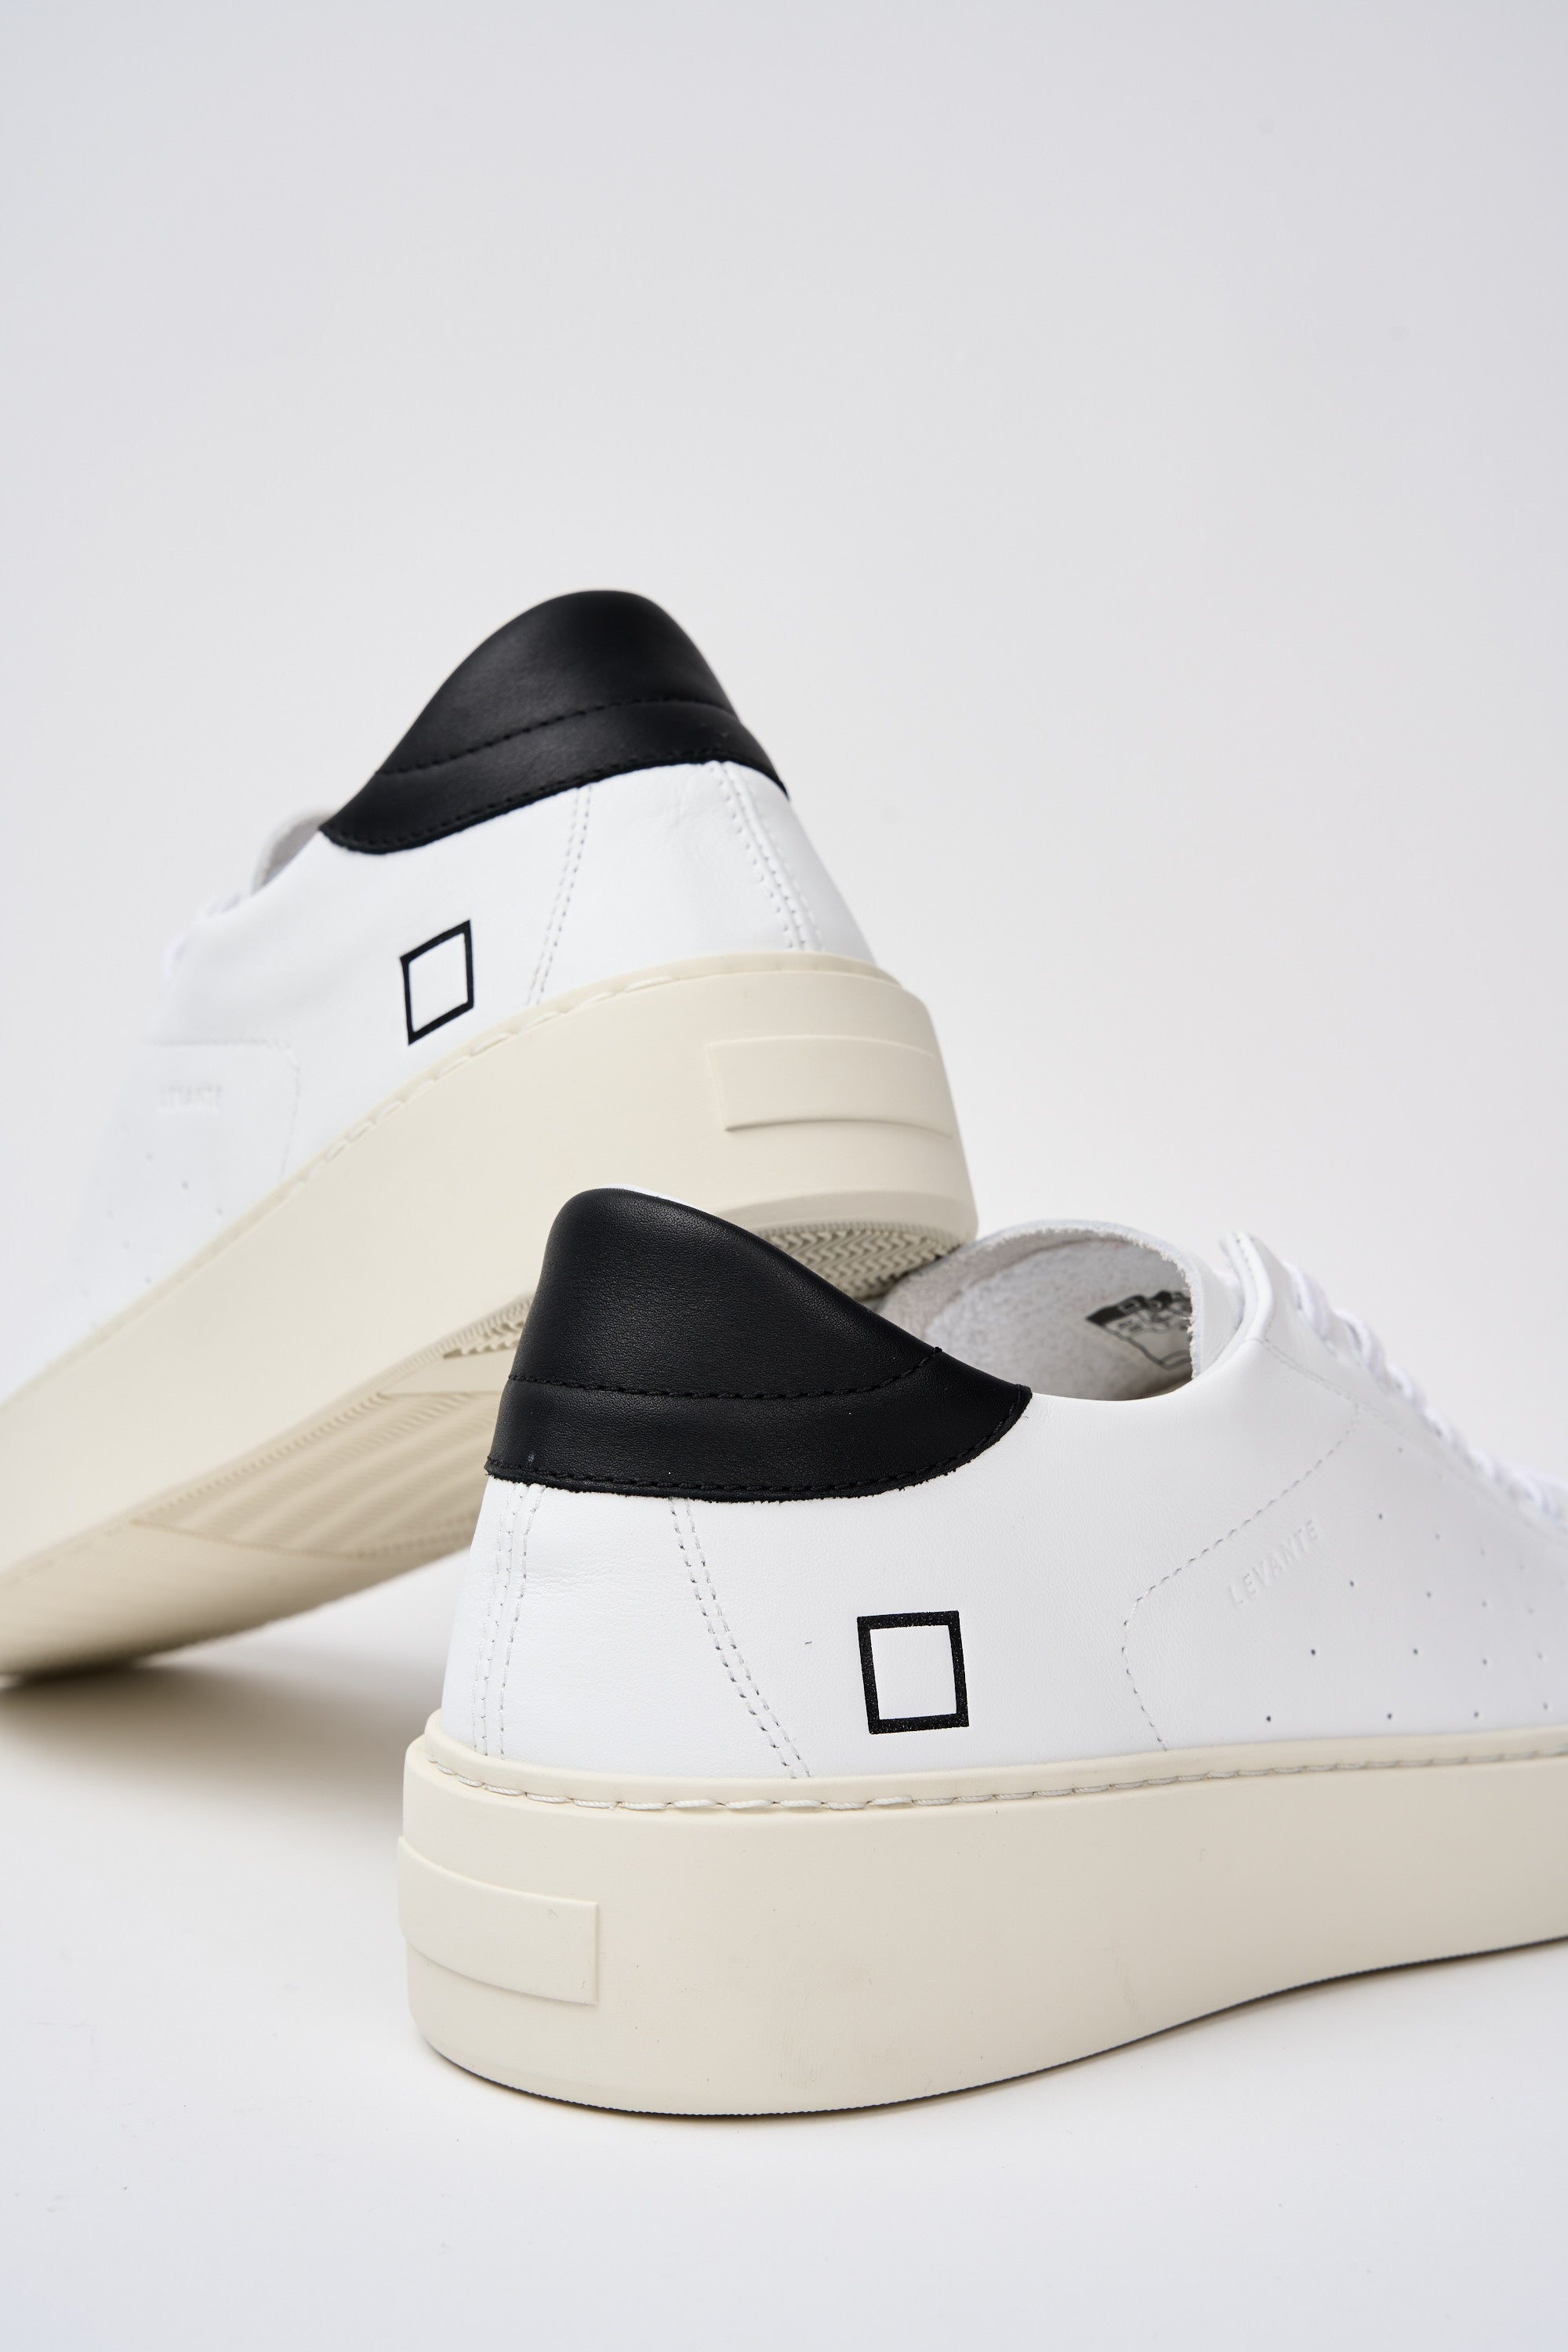 D.A.T.E. Sneaker Levante Leather White/Black-6